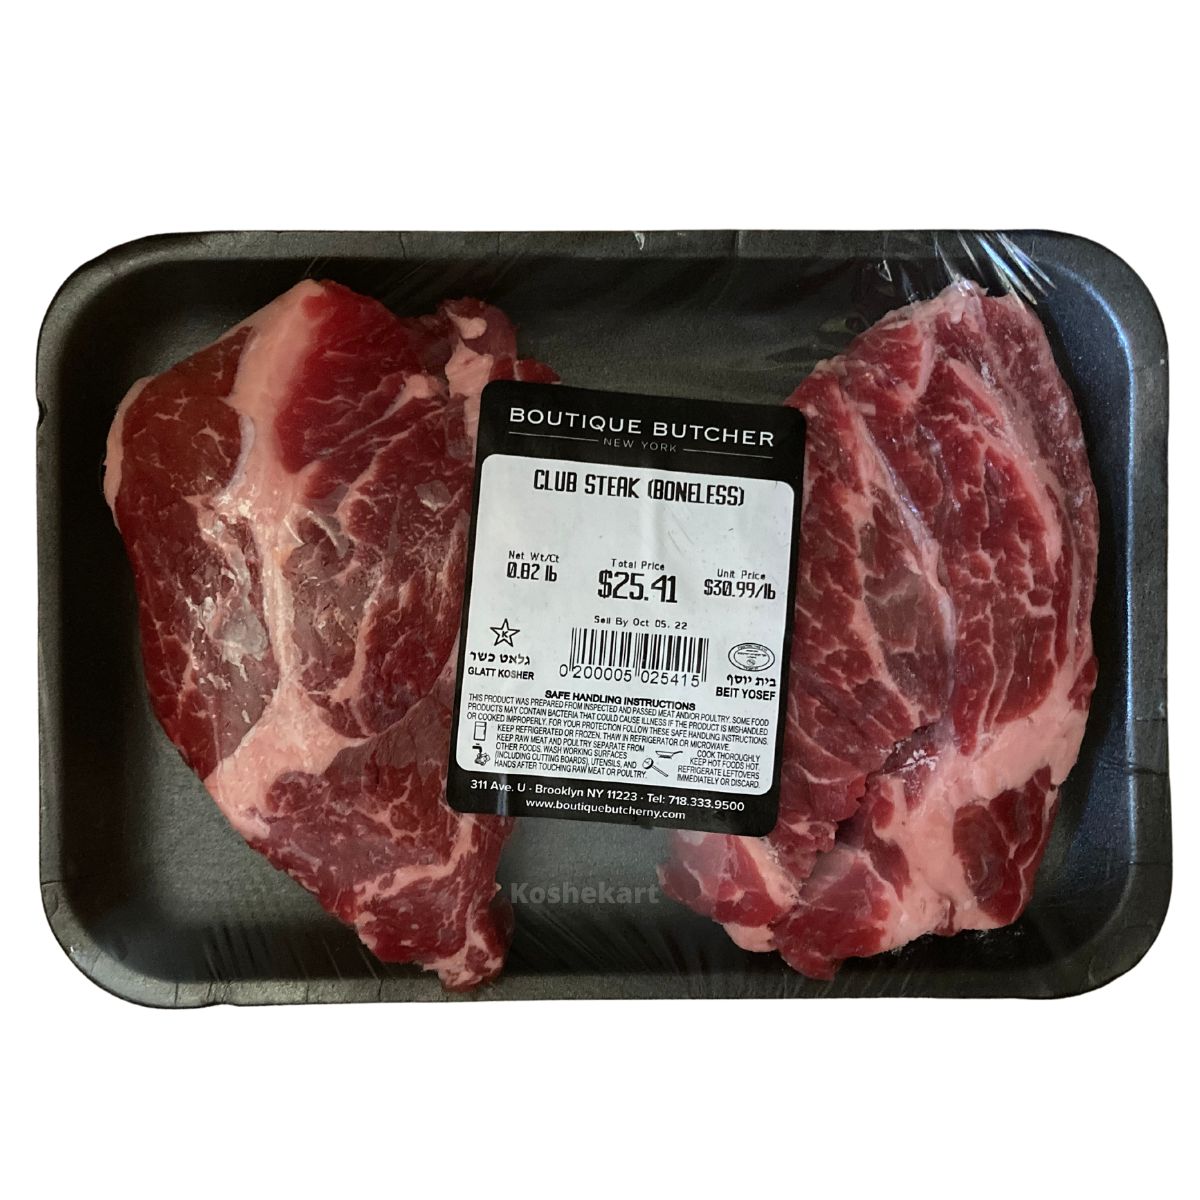 Boutique Butcher Boneless Club Steak (Regular Cut) (0.8 lbs - 1.1 lbs)